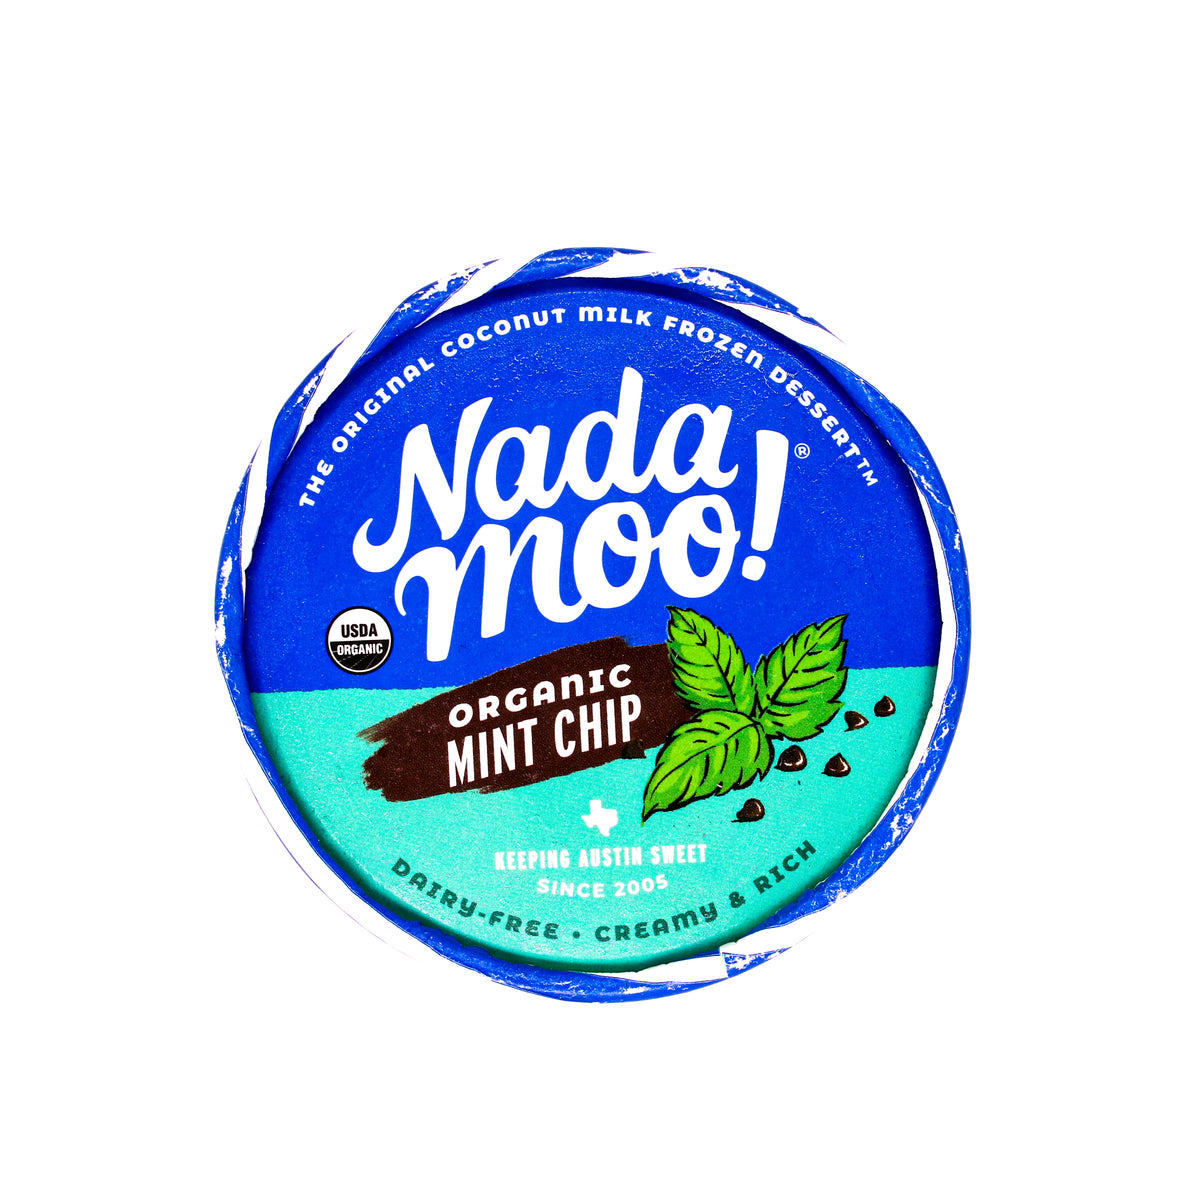 Nada Moo Lotta Mint Chip